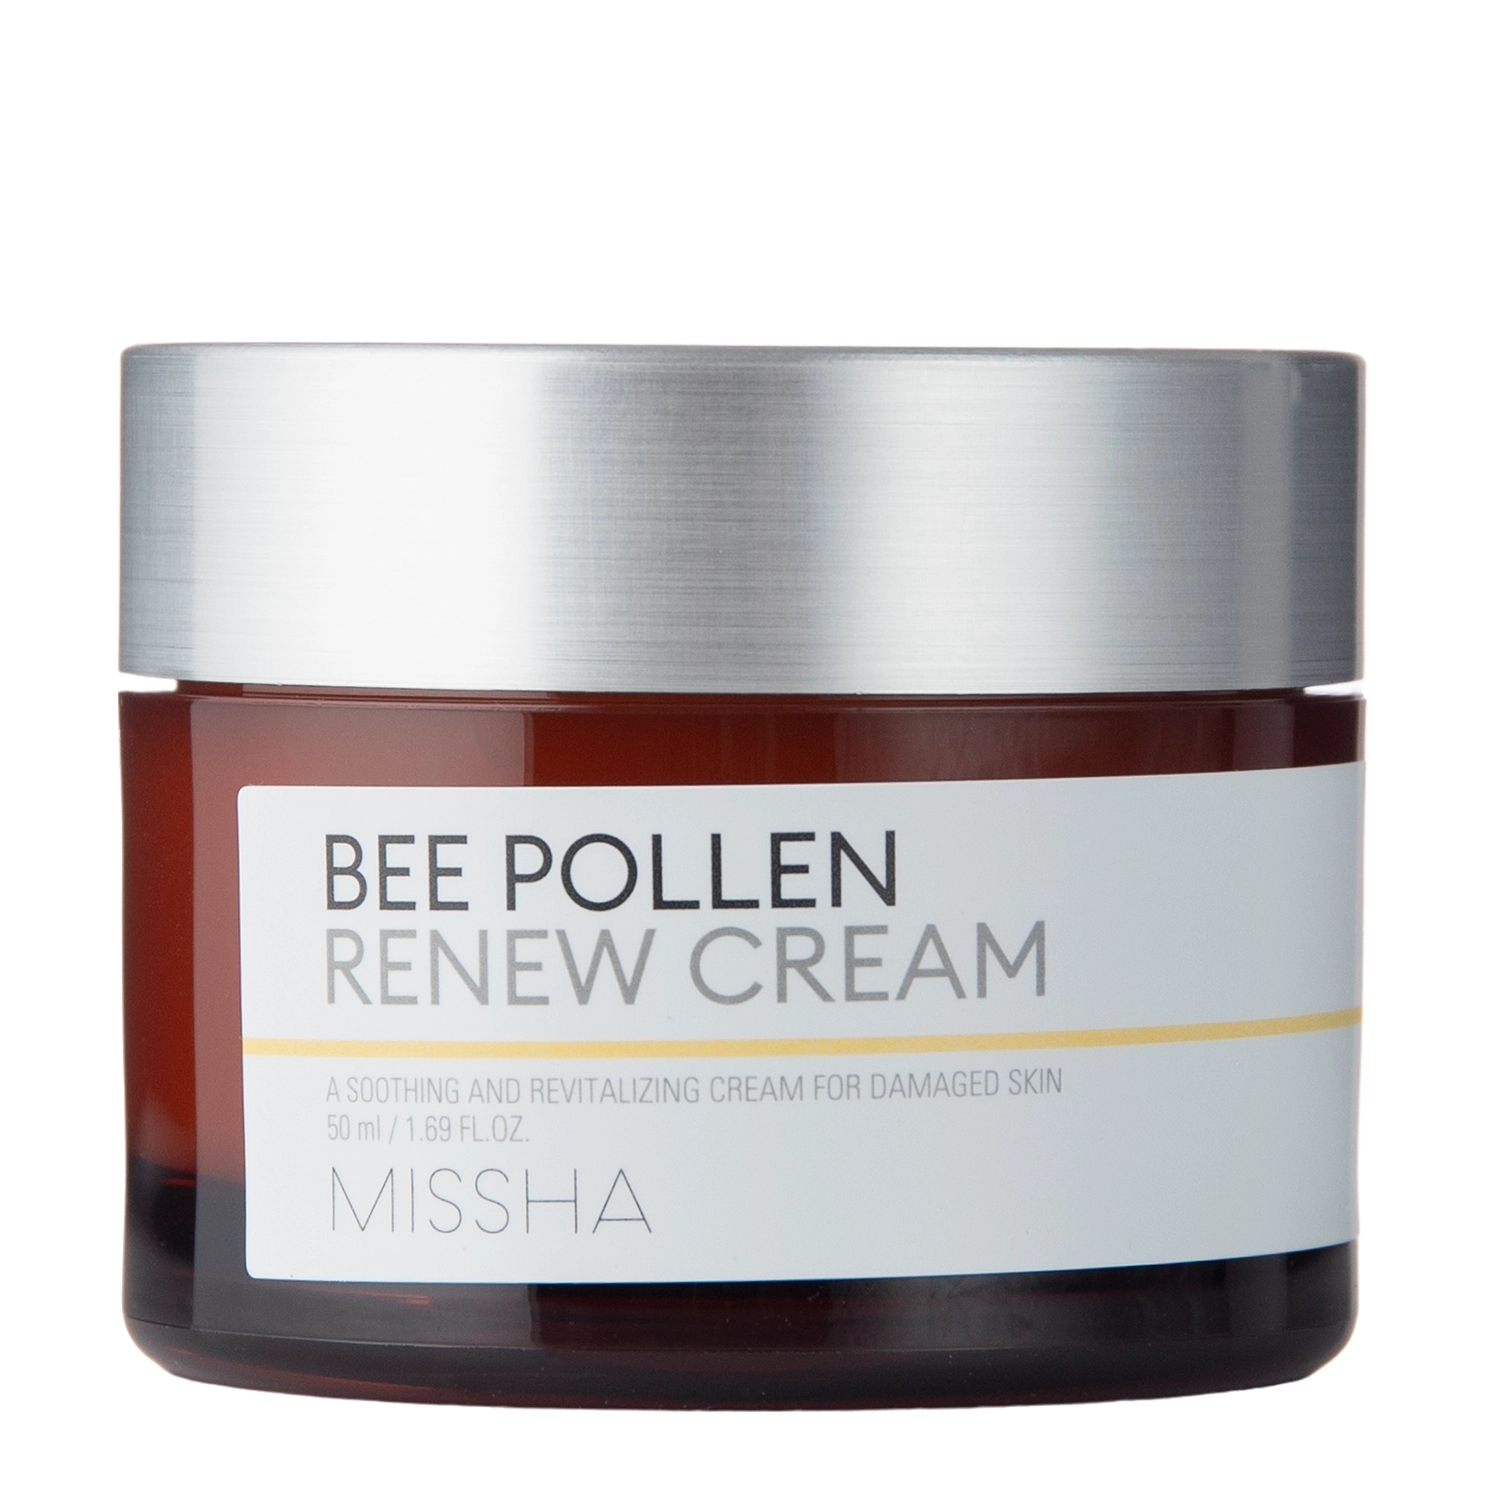 Missha - Bee Pollen Renew Cream - Strengthening Cream with Bee Pollen Extract - 50ml